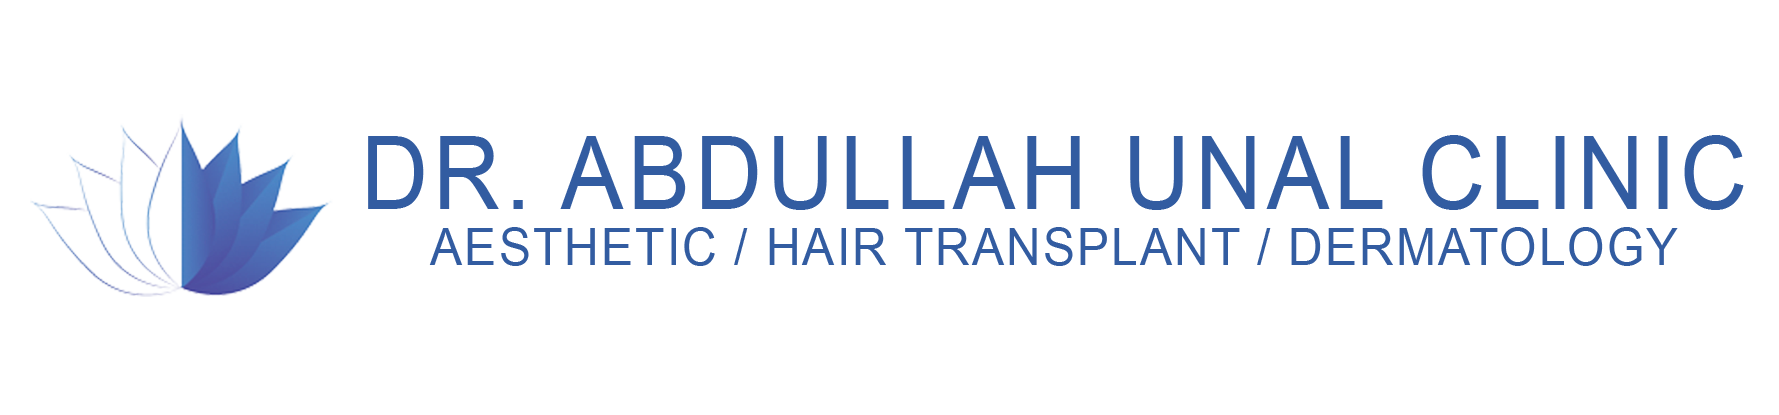 Dr. Abdullah Ünal Clinic